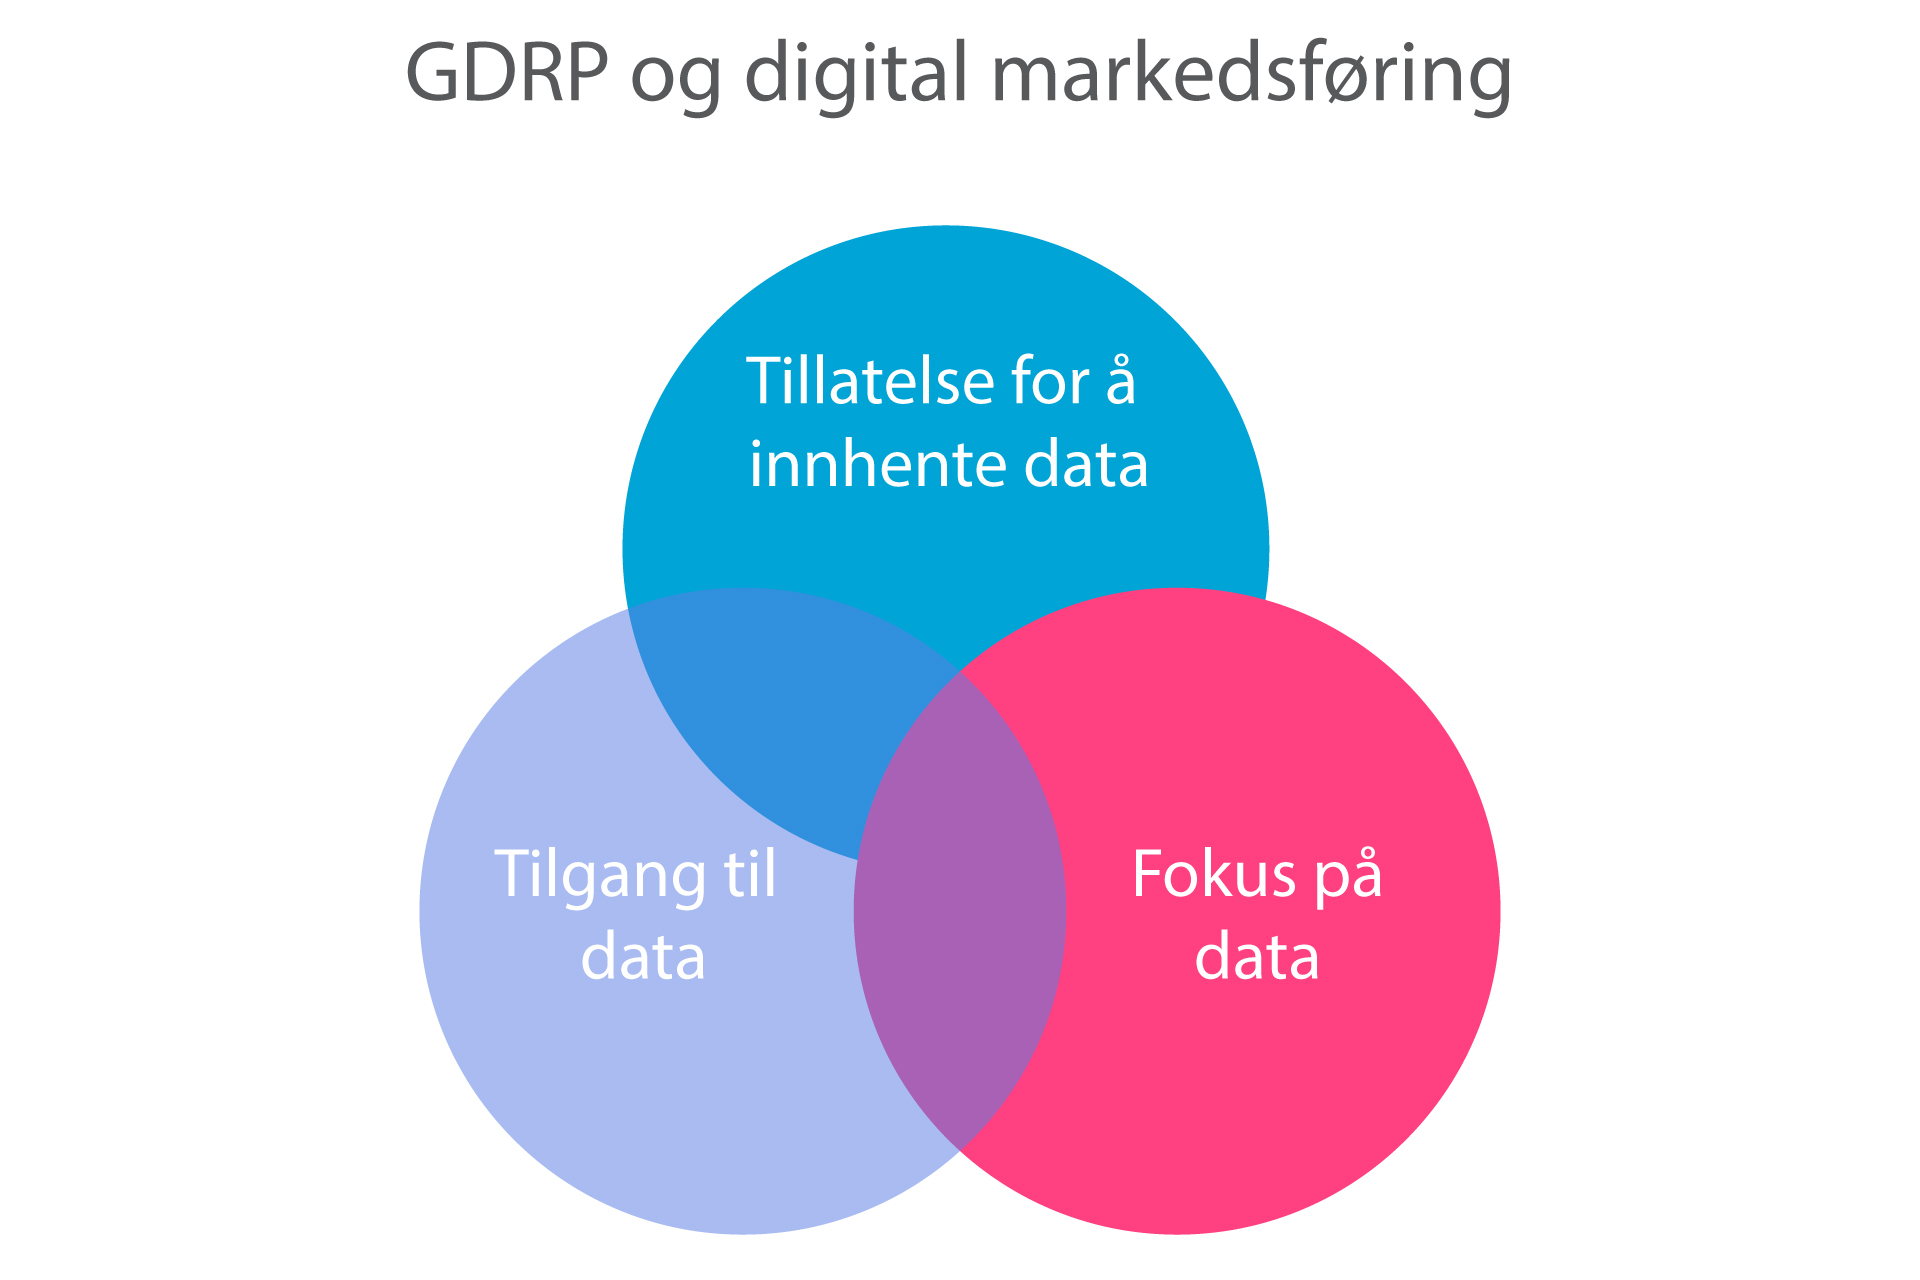 De tre hovedfokus områdene for GDPR for markedsførere